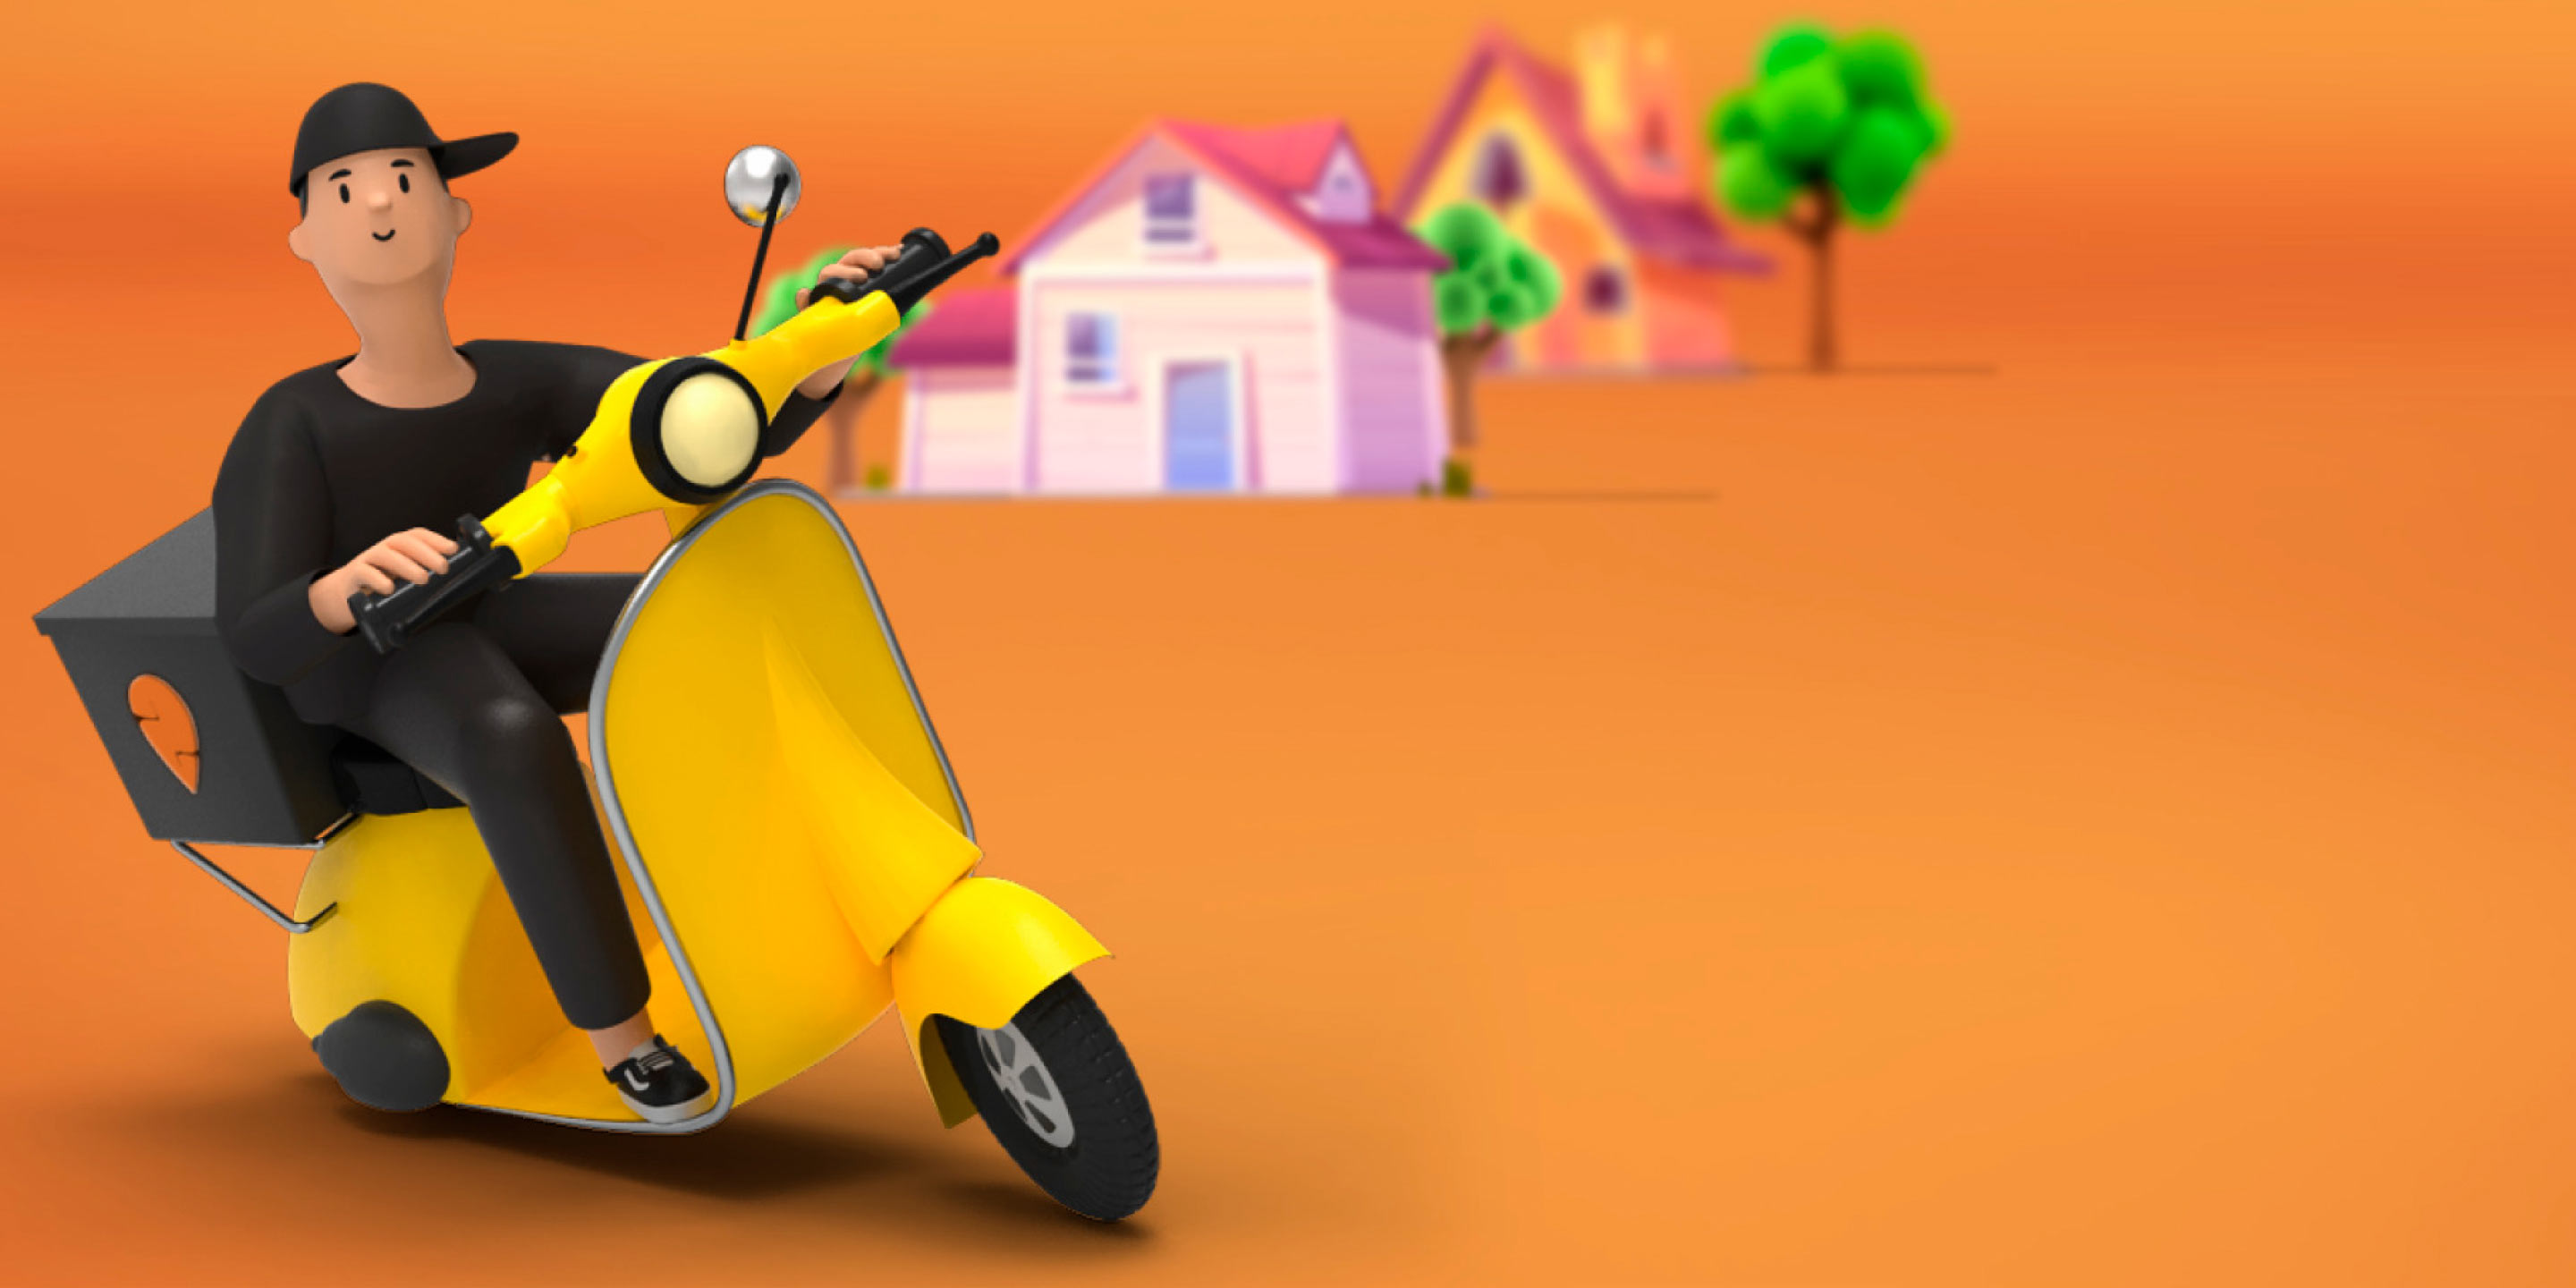 Рекламное изображение Swiggy: человек на скутере